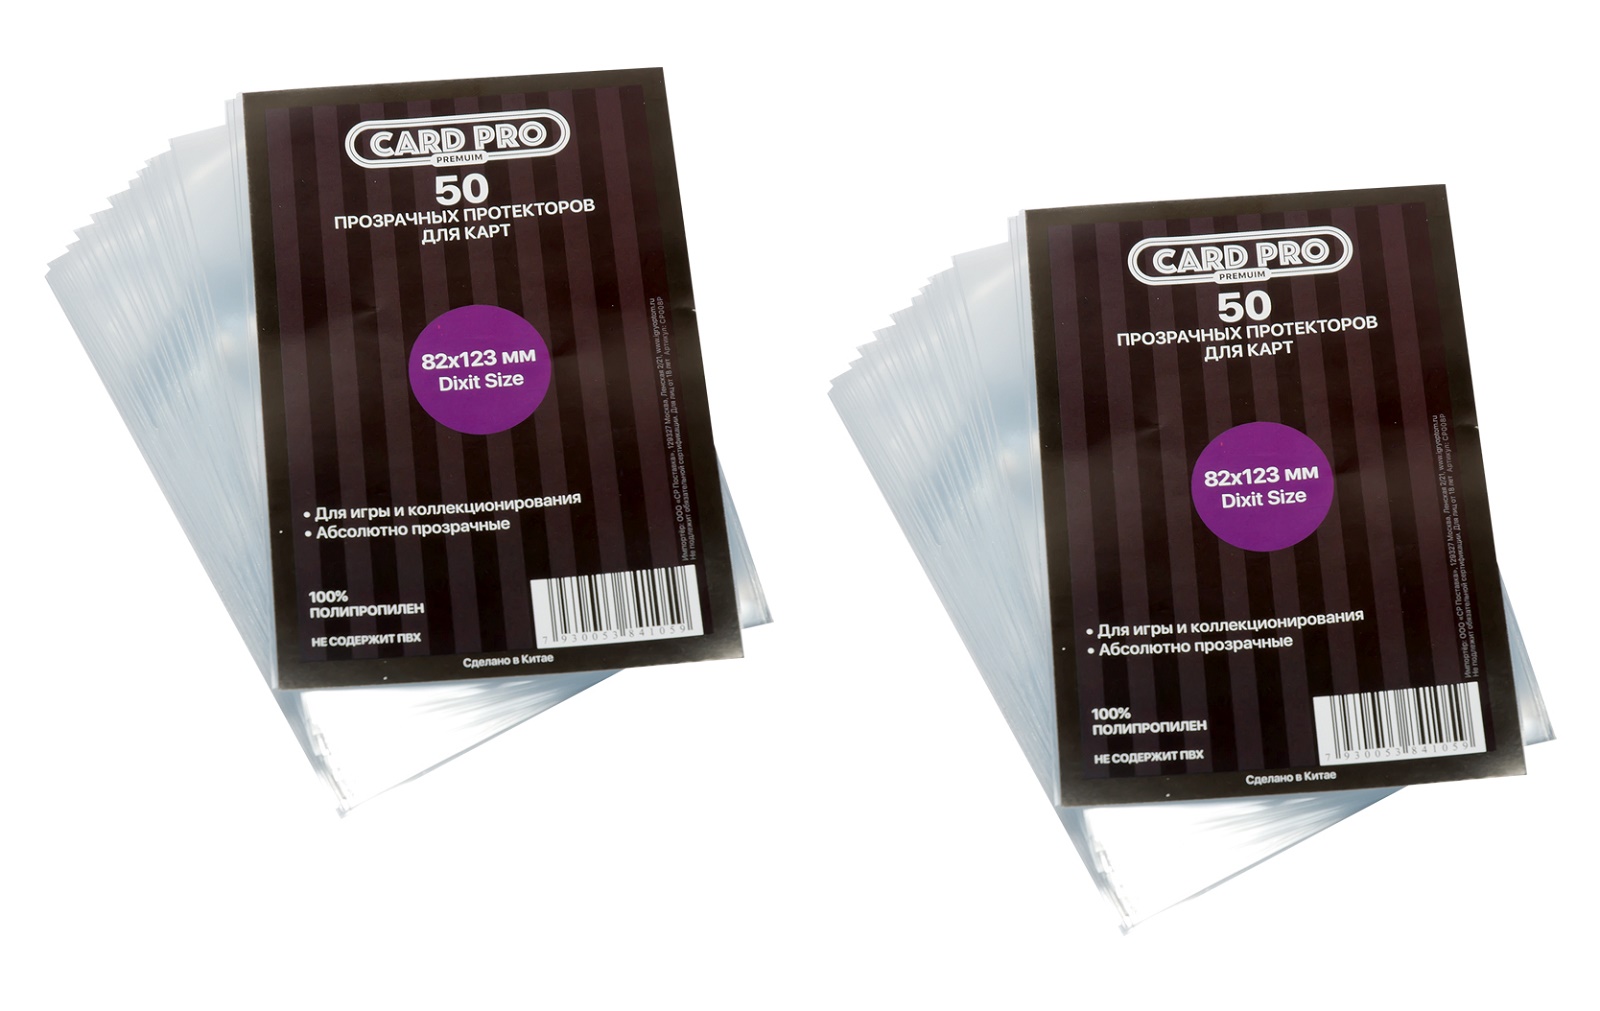 Протекторы Card-Pro PREMIUM Dixit Size для настольных игр 82x123 мм. 2 пачки прозрачные протекторы card pro small ccg size для настольных игр 62x96 мм 2 пачки